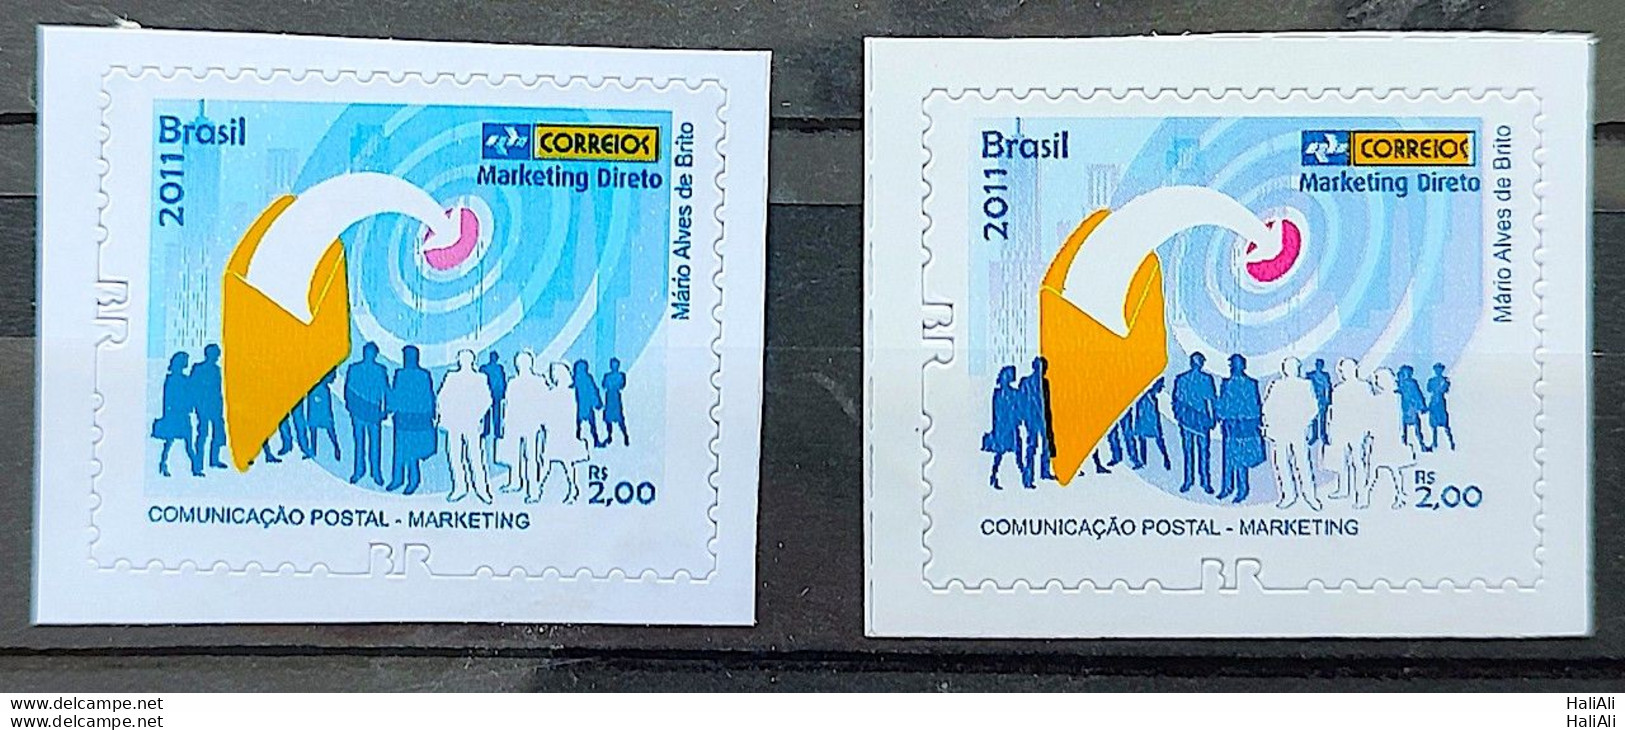 Brazil Regular Stamp RHM 861 Postal Services Marketing Perforation BR 2011 Variety Of Color - Unused Stamps